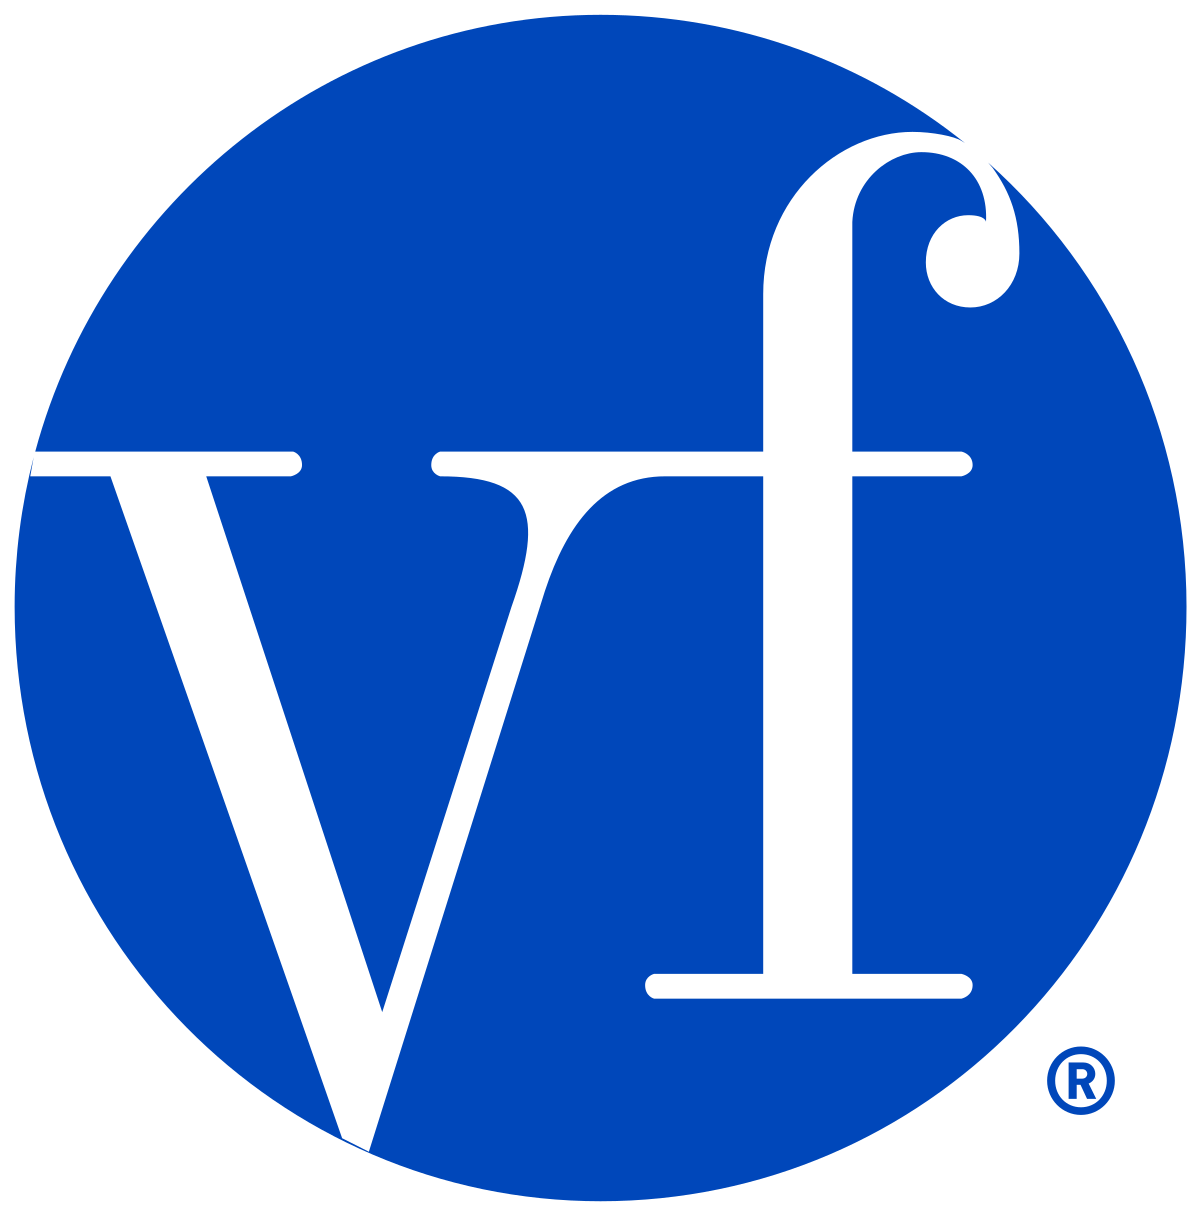 Outdoor Wear Company Logo - VF Corporation